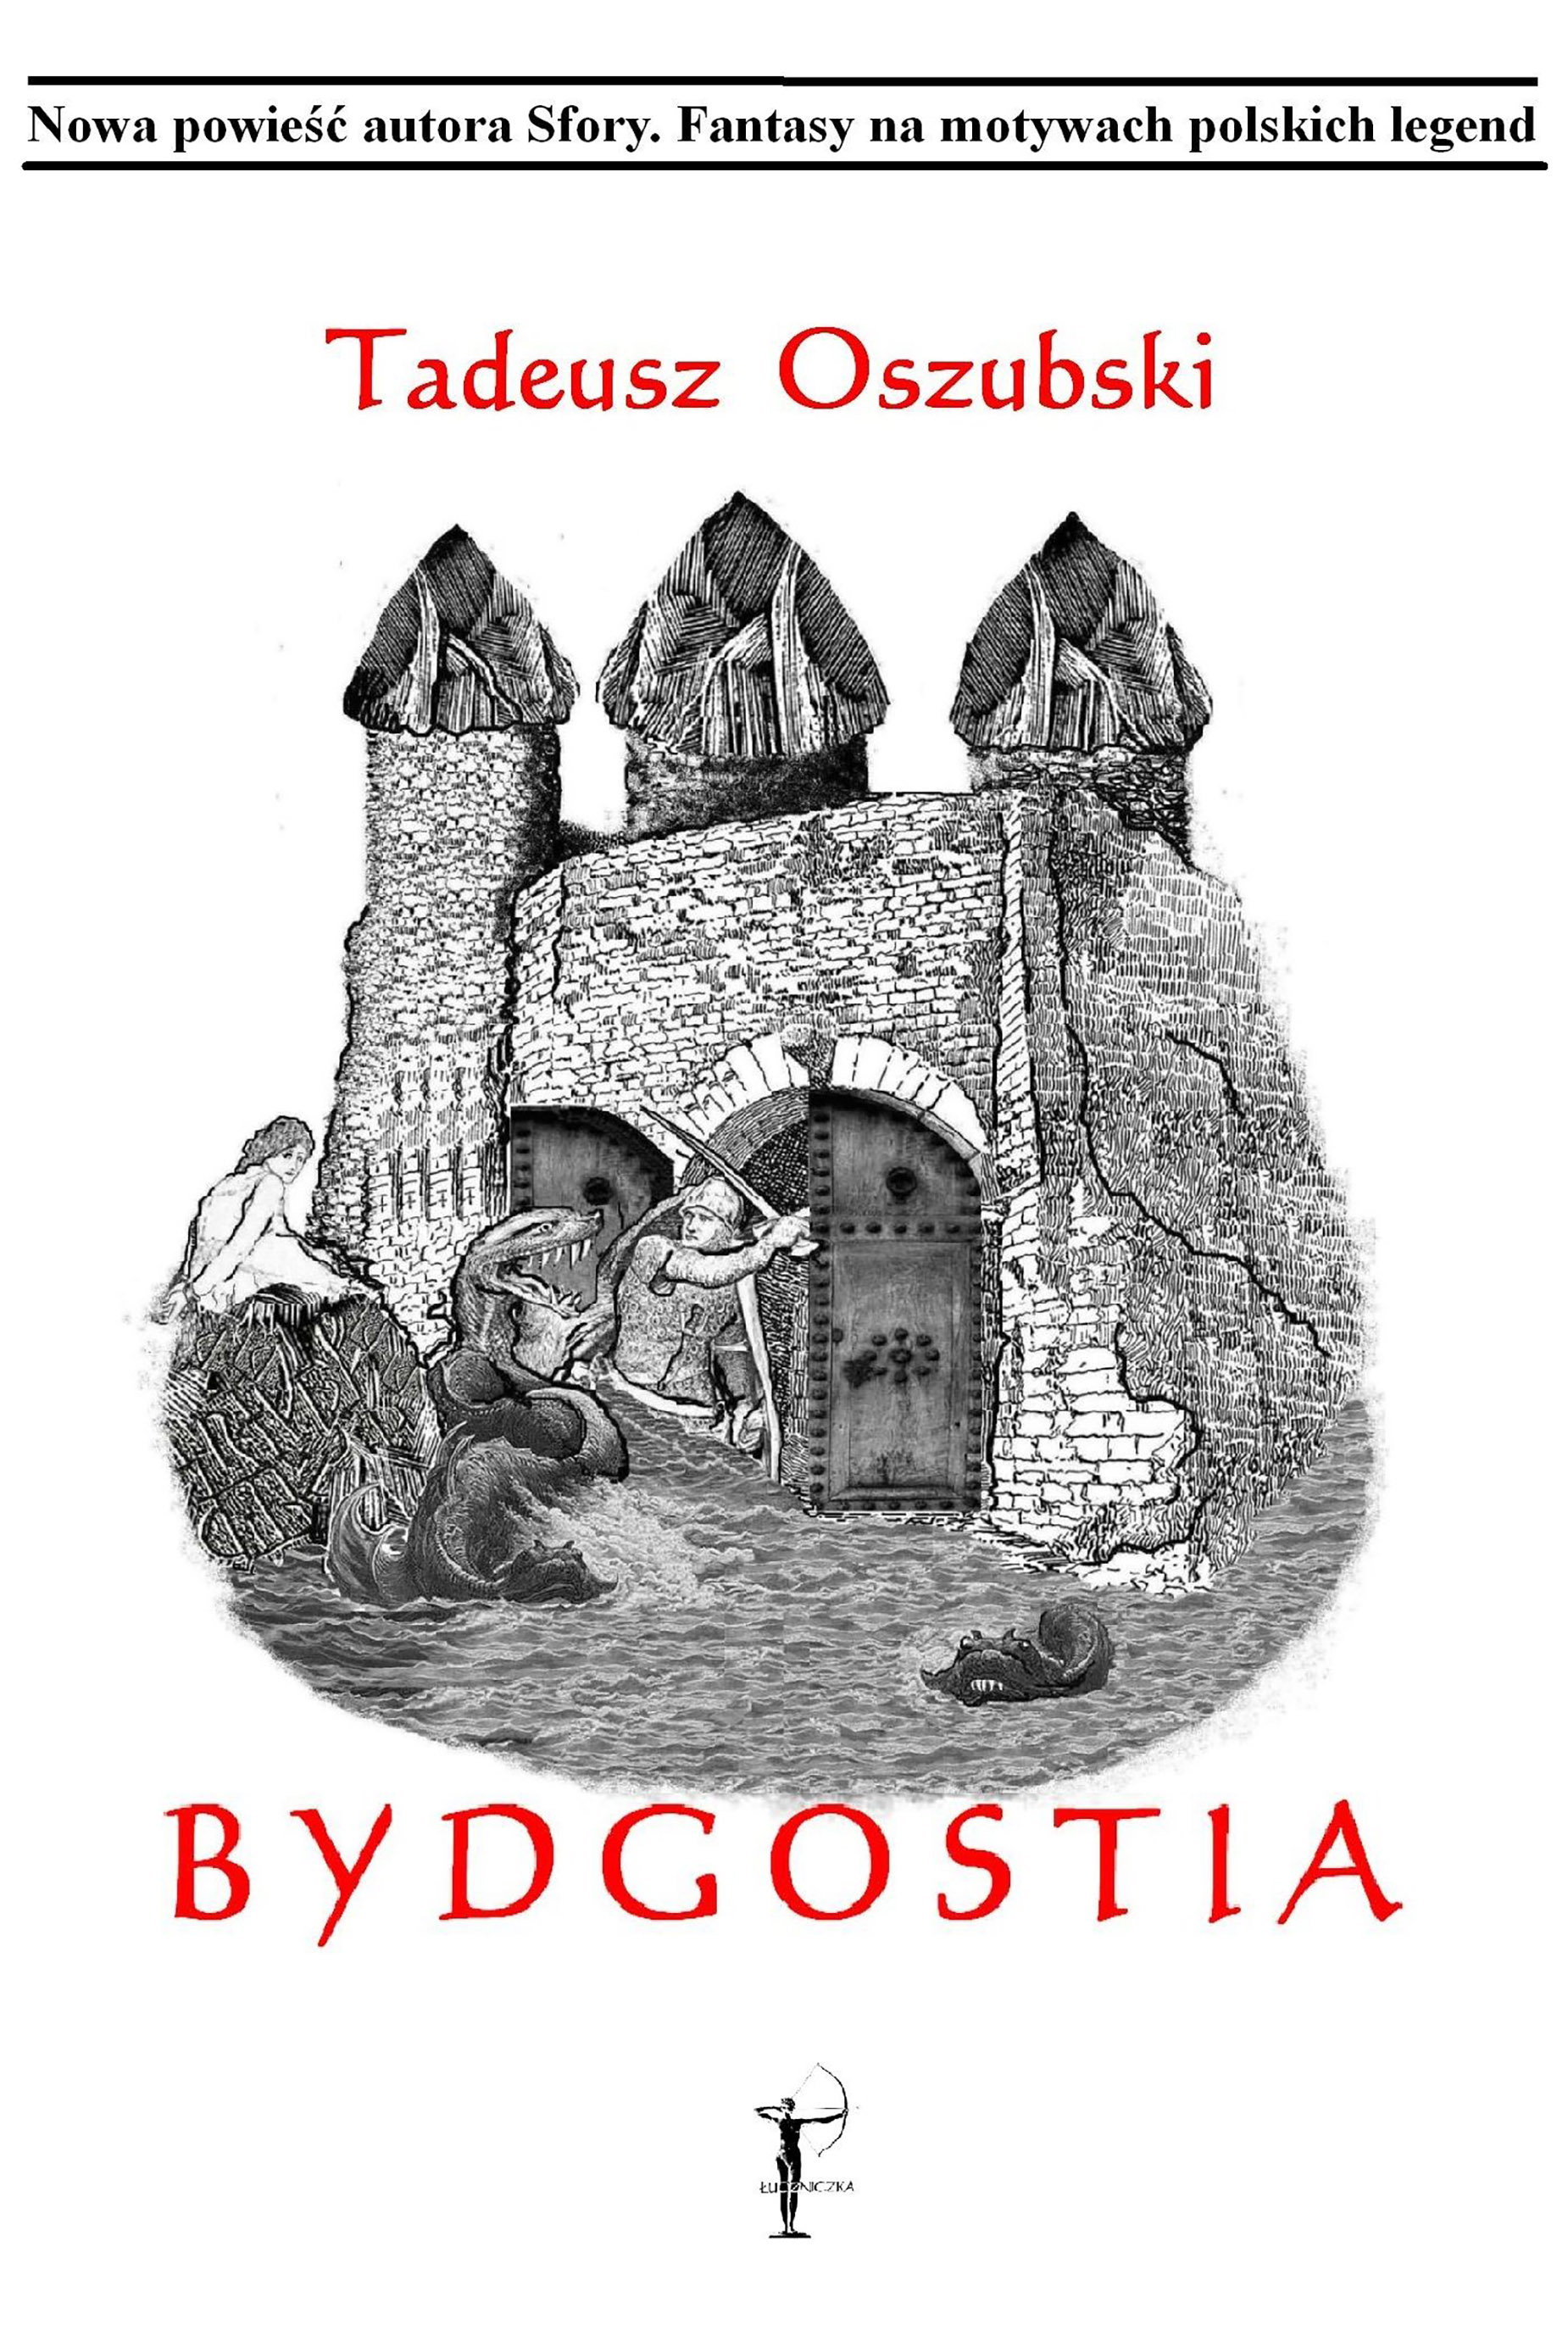 Bydgostia